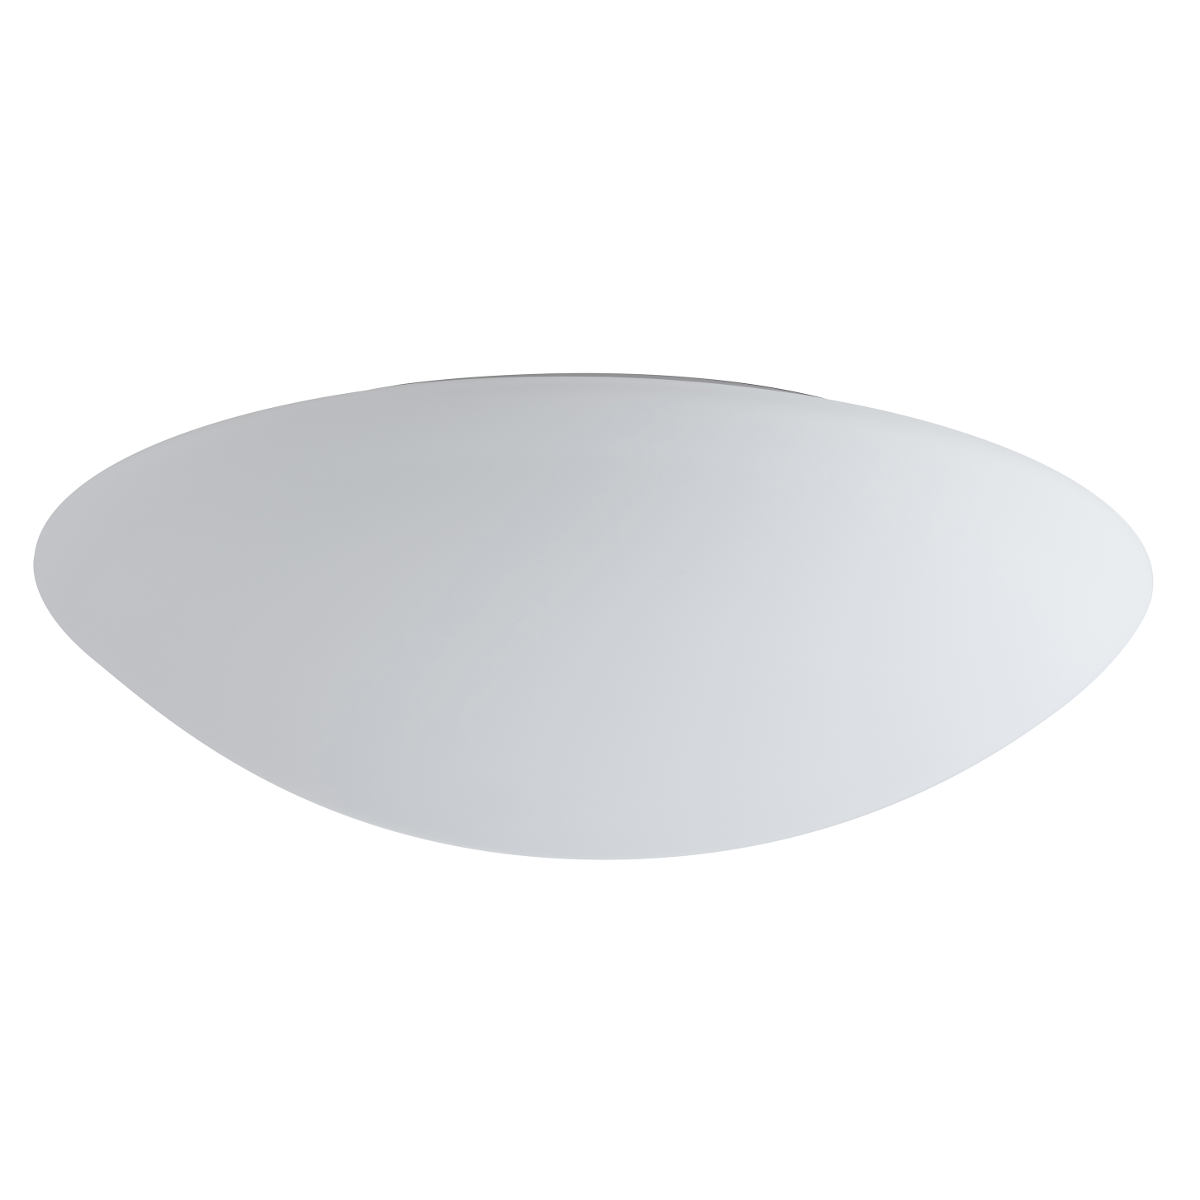 Funktionale Opalglas-Deckenleuchte AURORA LED, Ø 20–60 cm: Durchmesser 49 cm